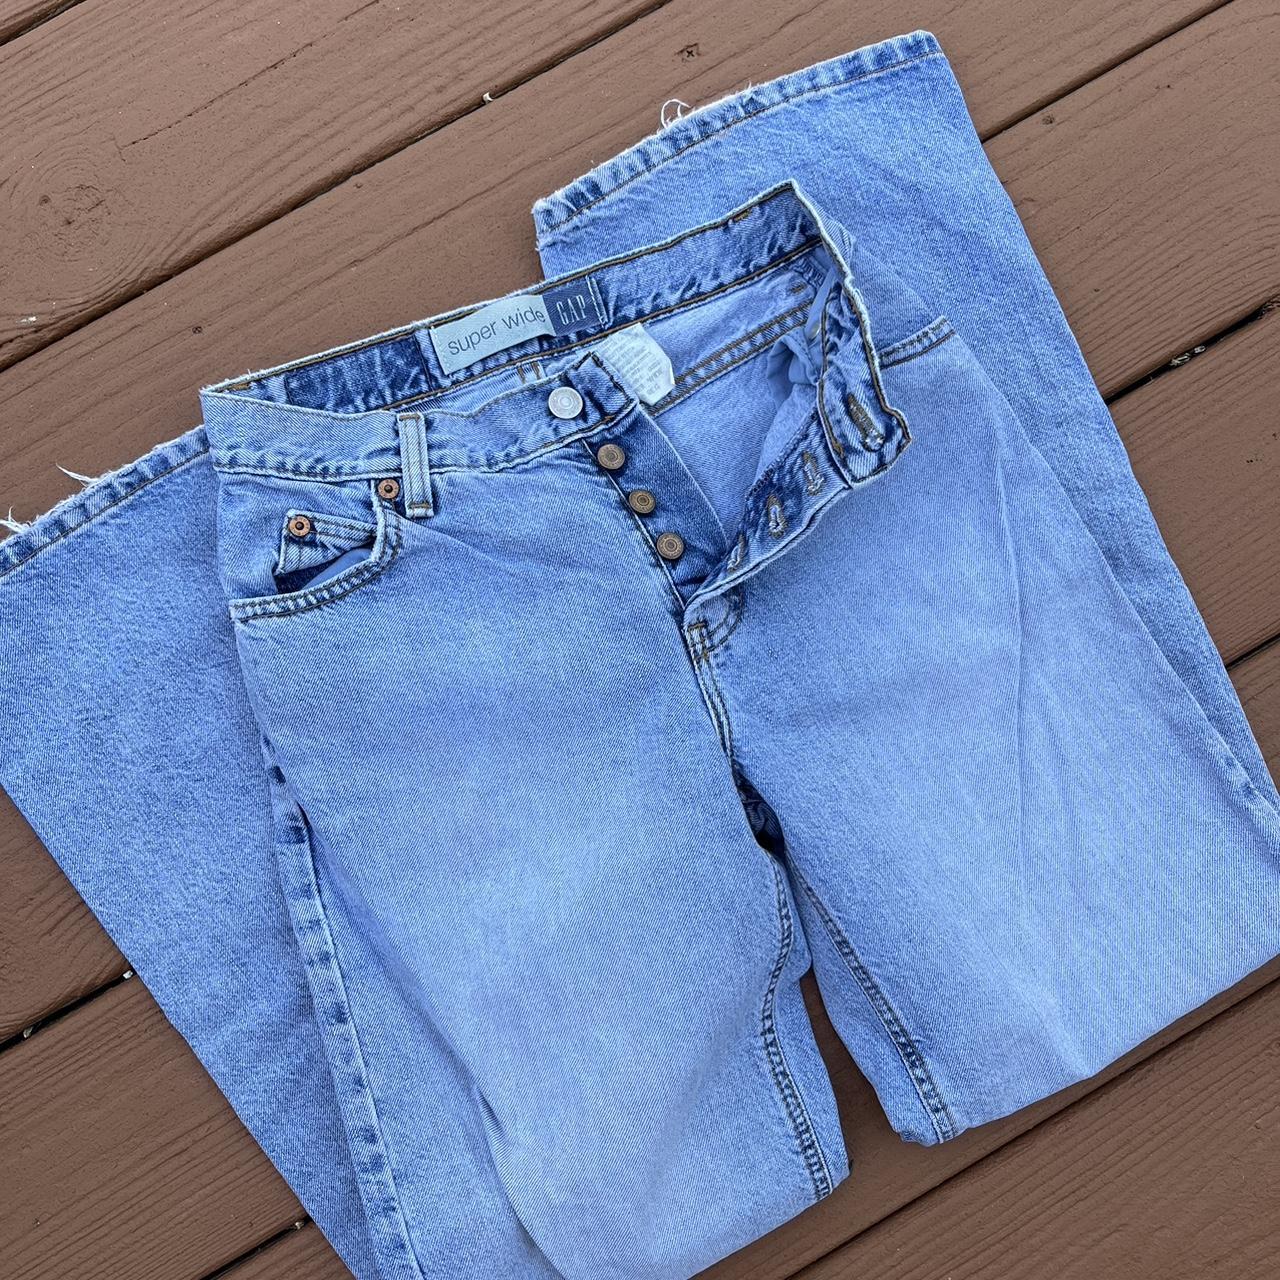 Vintage 1990s 90s Gap blue Jeans denim faded super... - Depop